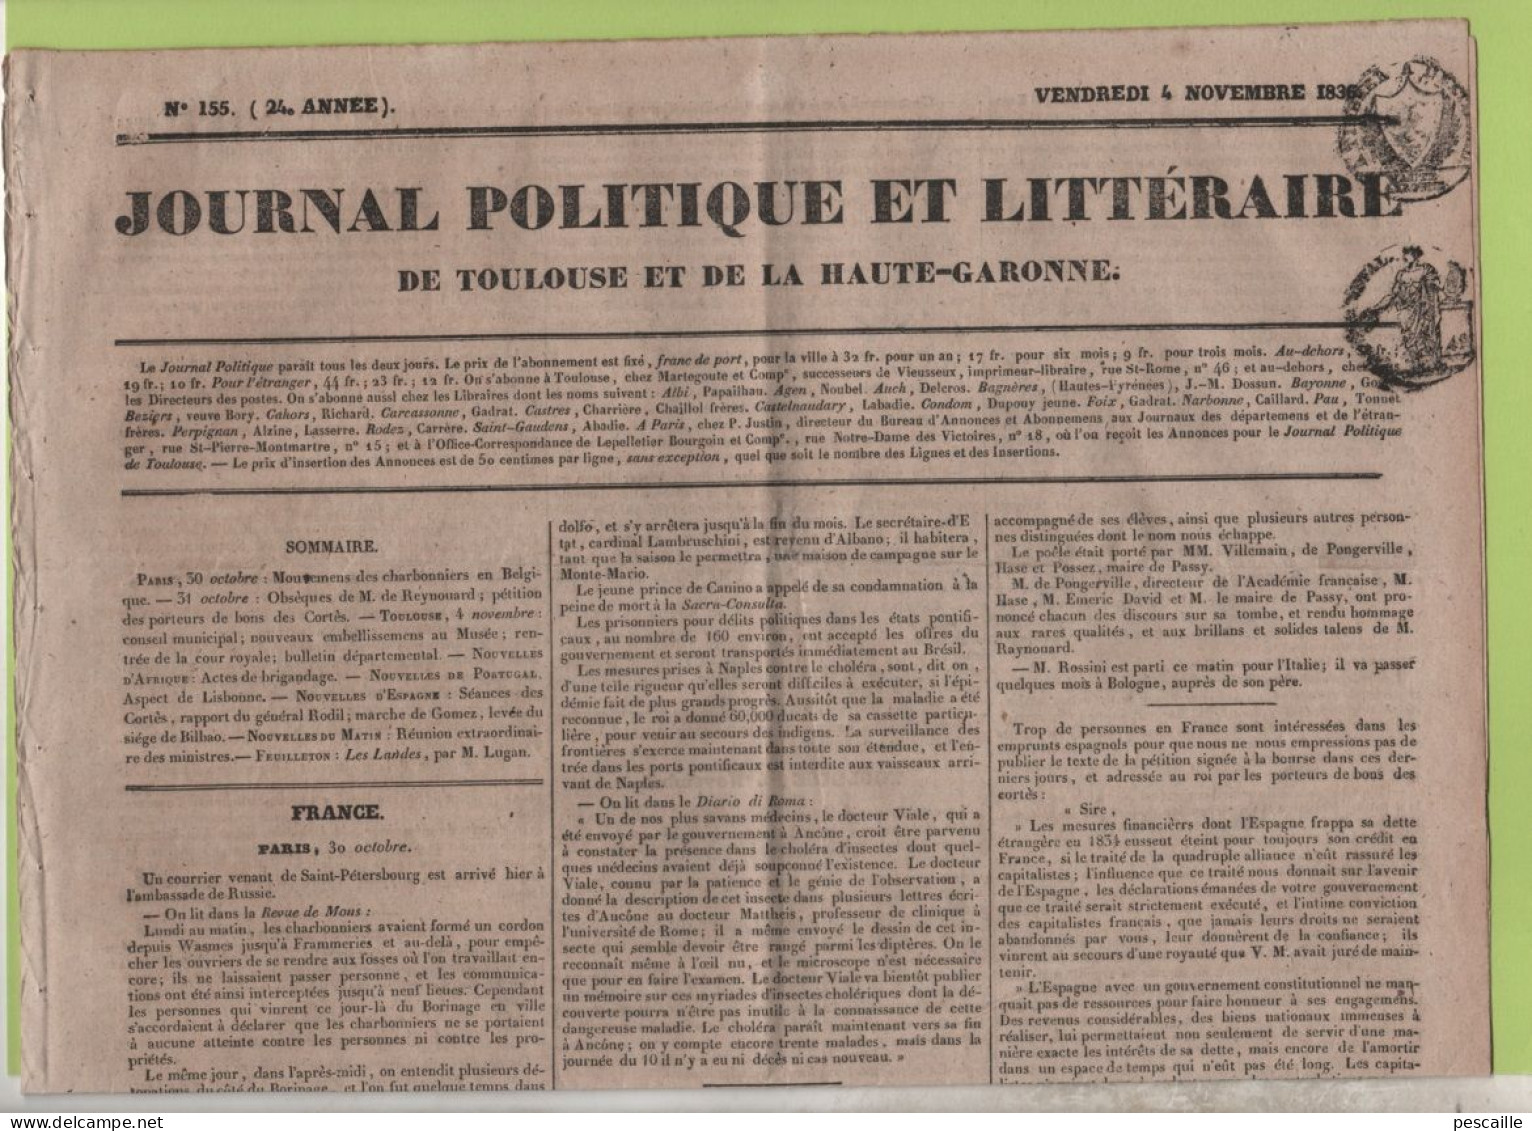 JOURNAL POLITIQUE TOULOUSE 04 11 1836 - LES LANDES - BORINAGE MONS CUESMES - OBSEQUES M. RAYNOUARD - BOURSE ESPAGNE - - 1800 - 1849